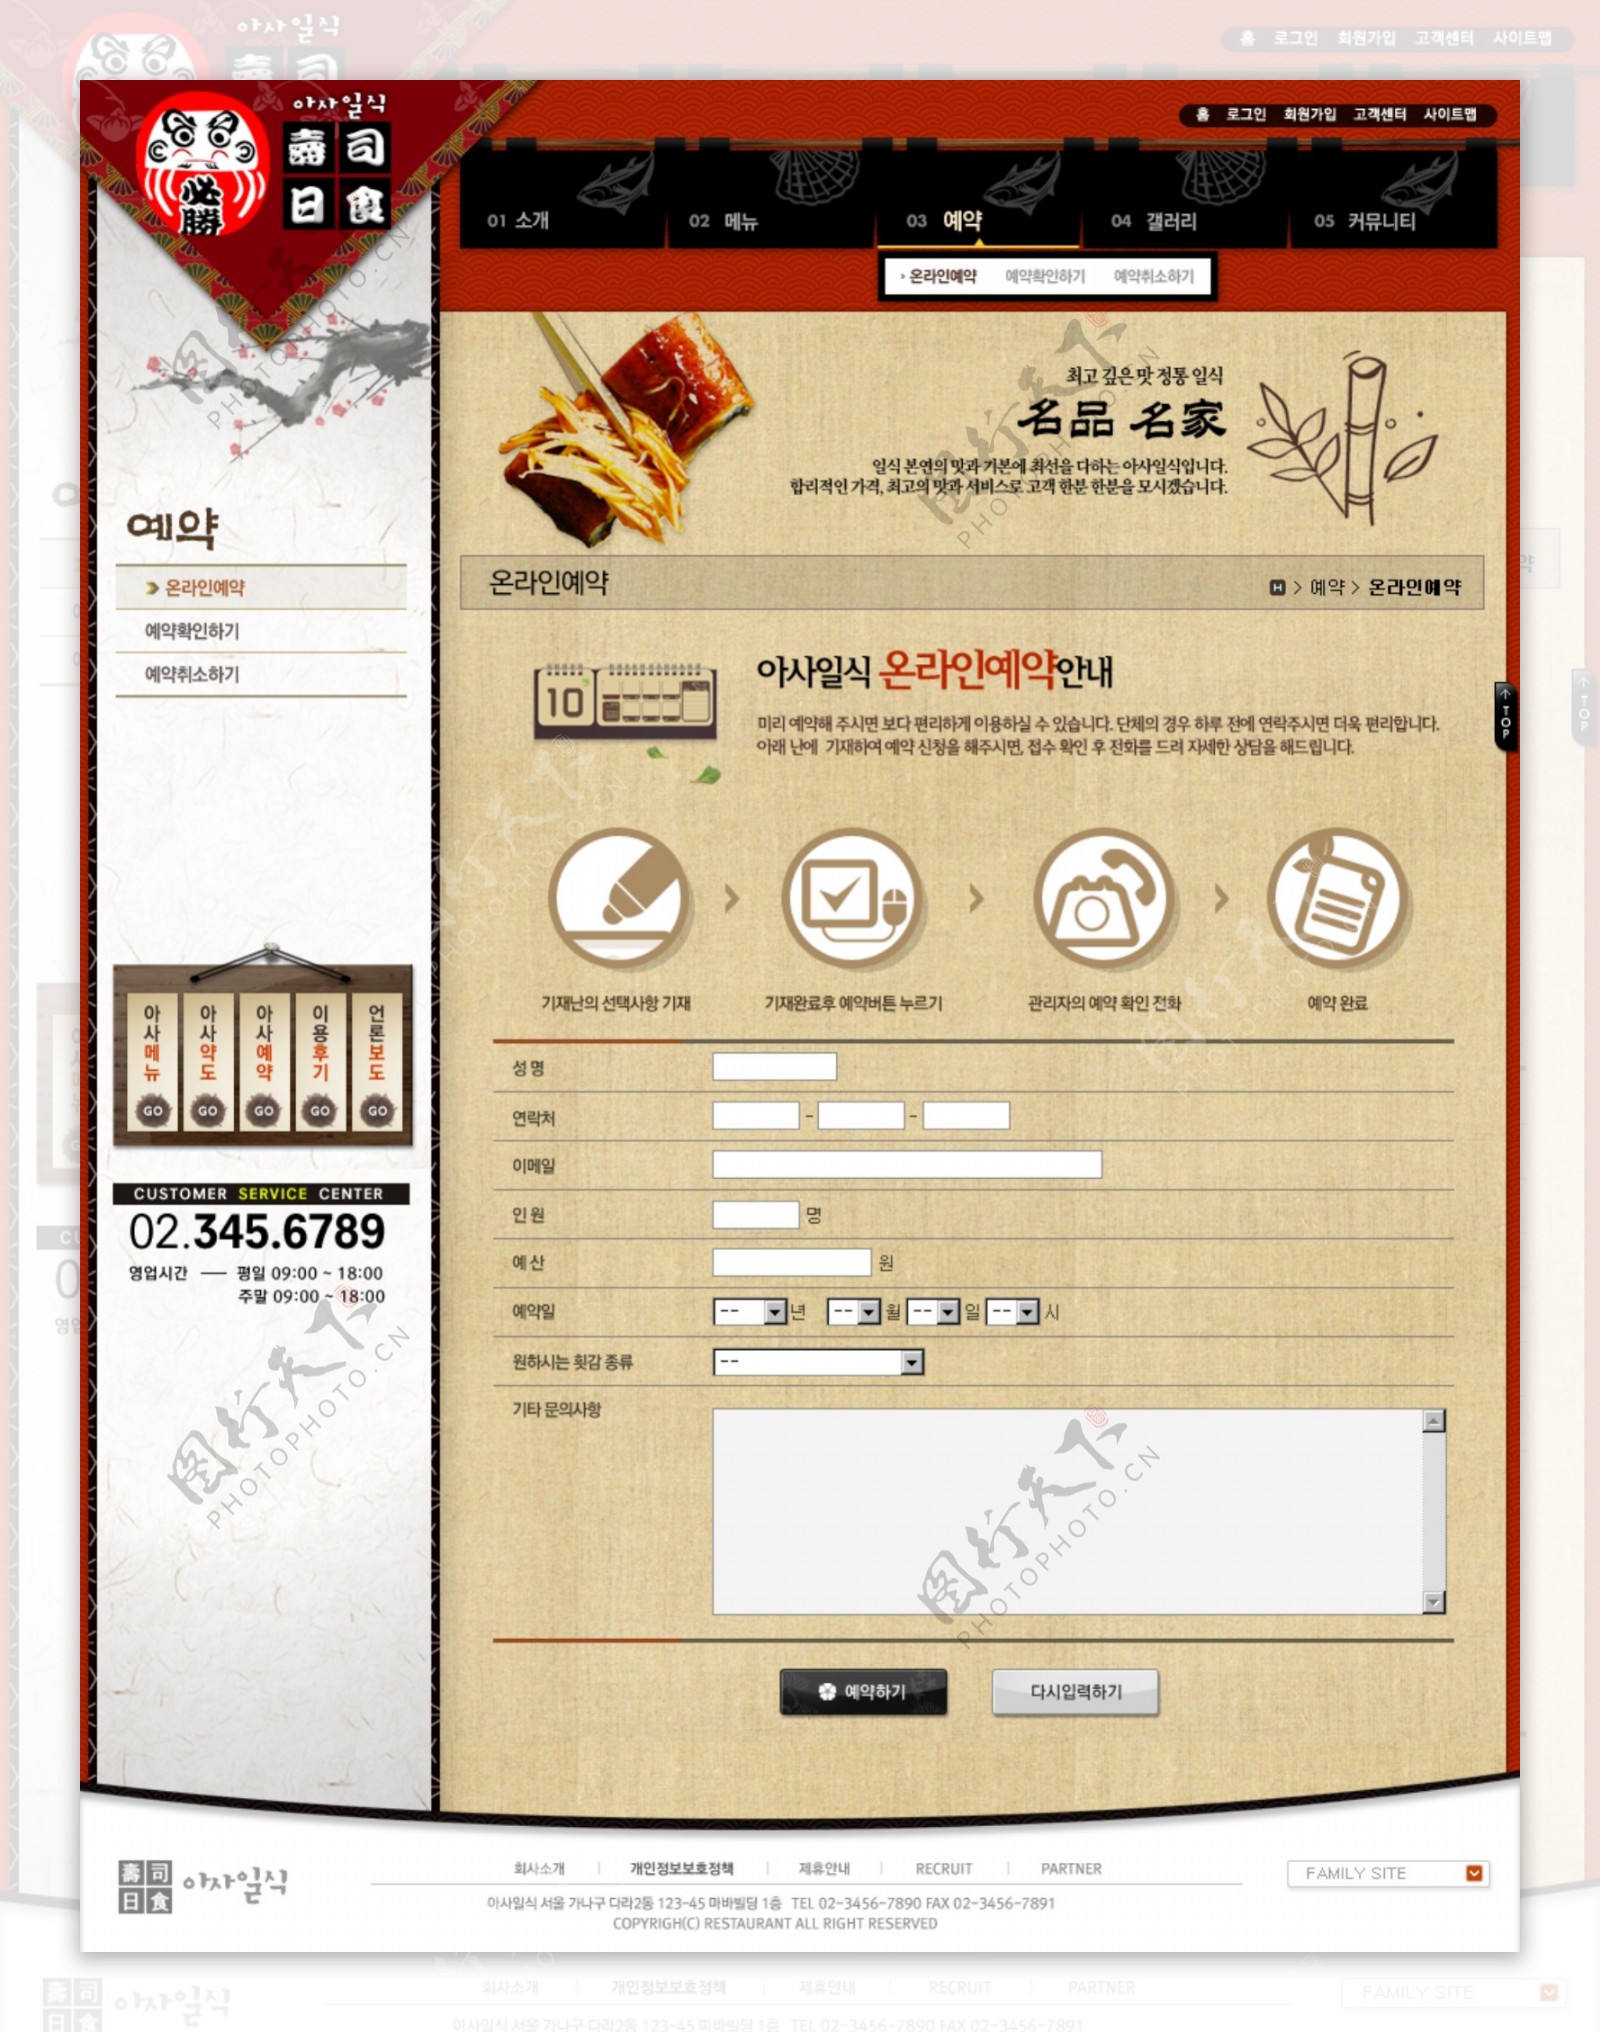 日本寿司美食网页设计图片